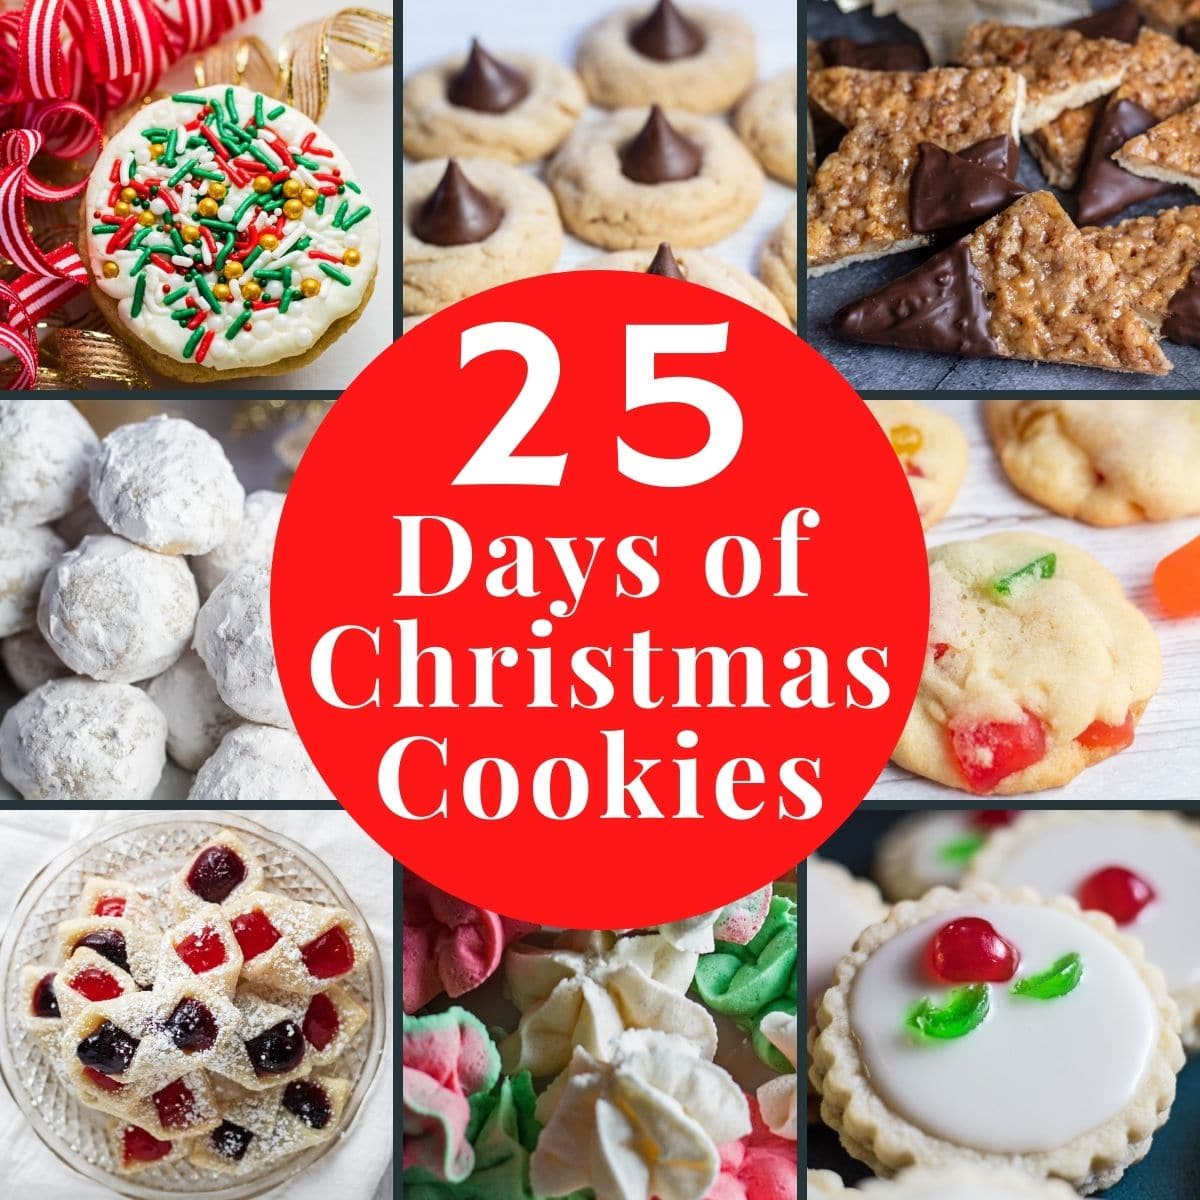 Gambar kolase 25 Days of Christmas Cookies dengan 8 ubin dan hamparan teks.